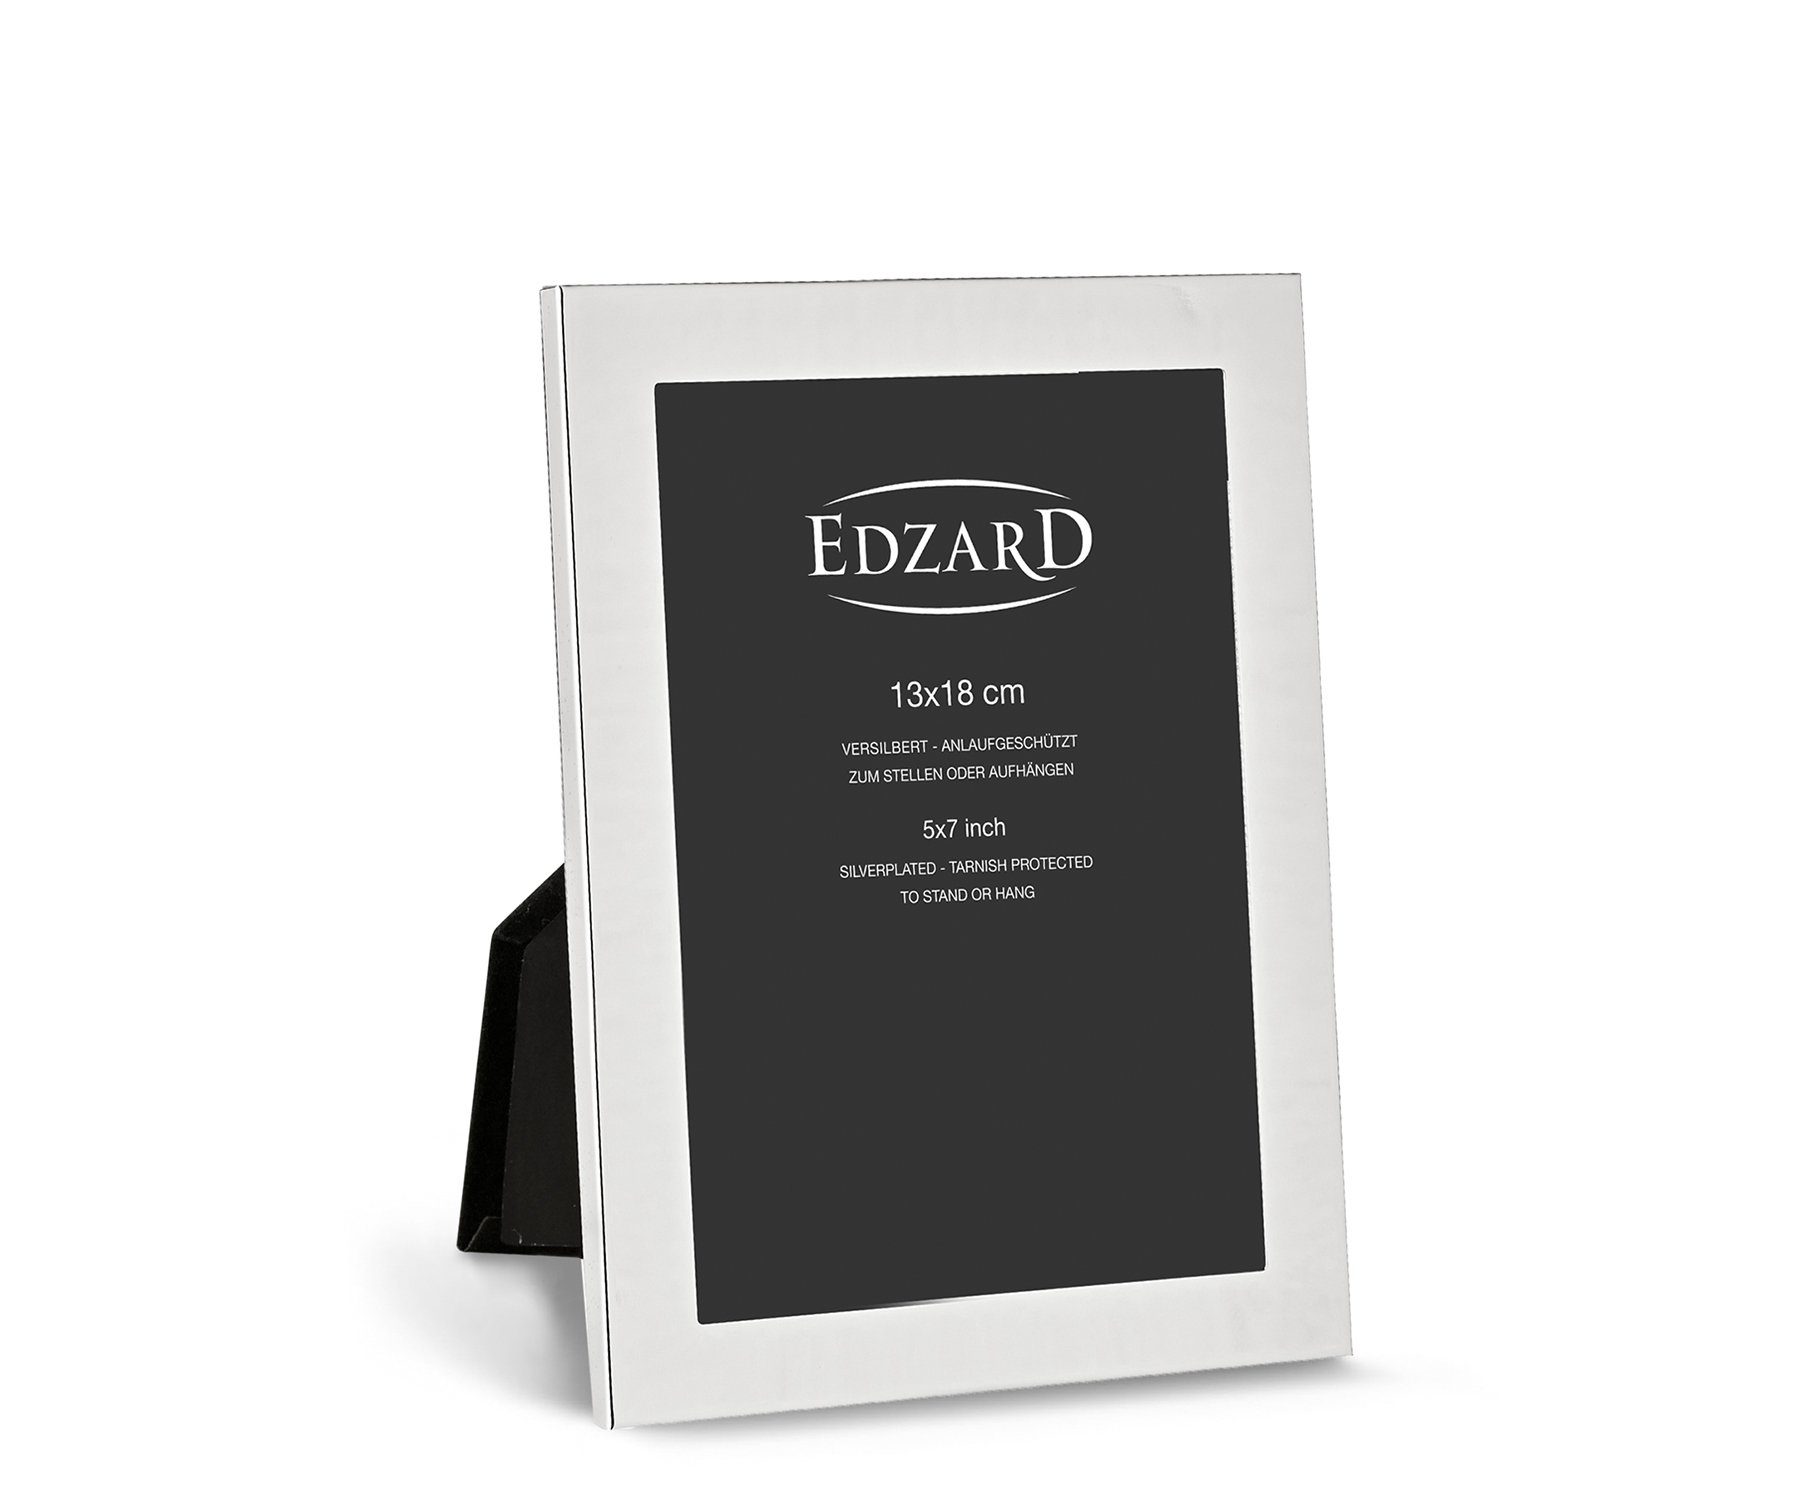 EDZARD Bilderrahmen Prato, versilbert und anlaufgeschützt, für 13x18 cm Foto